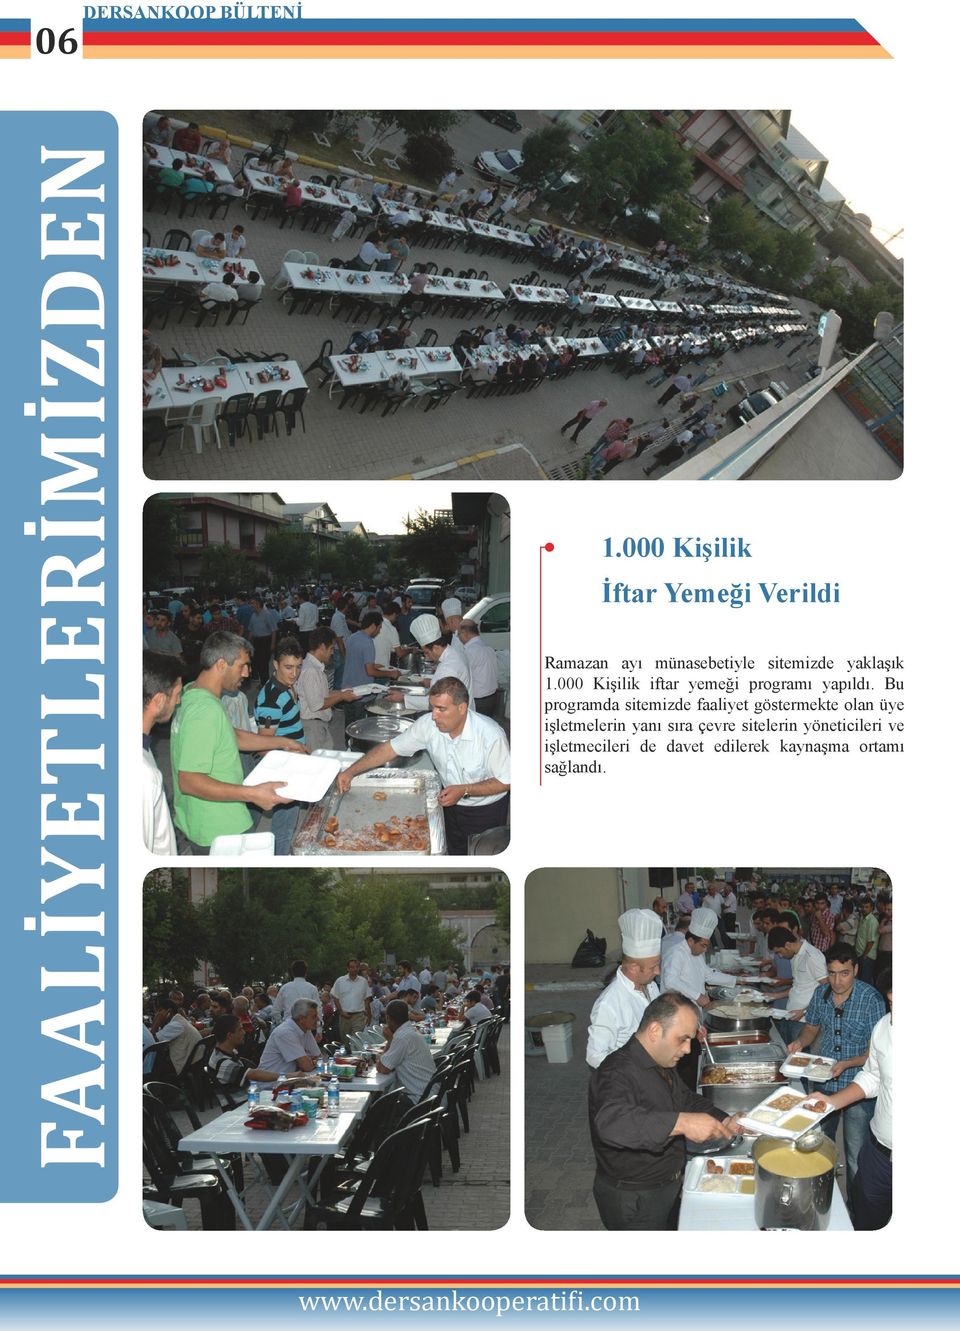 000 Kişilik iftar yemeği programı yapıldı.